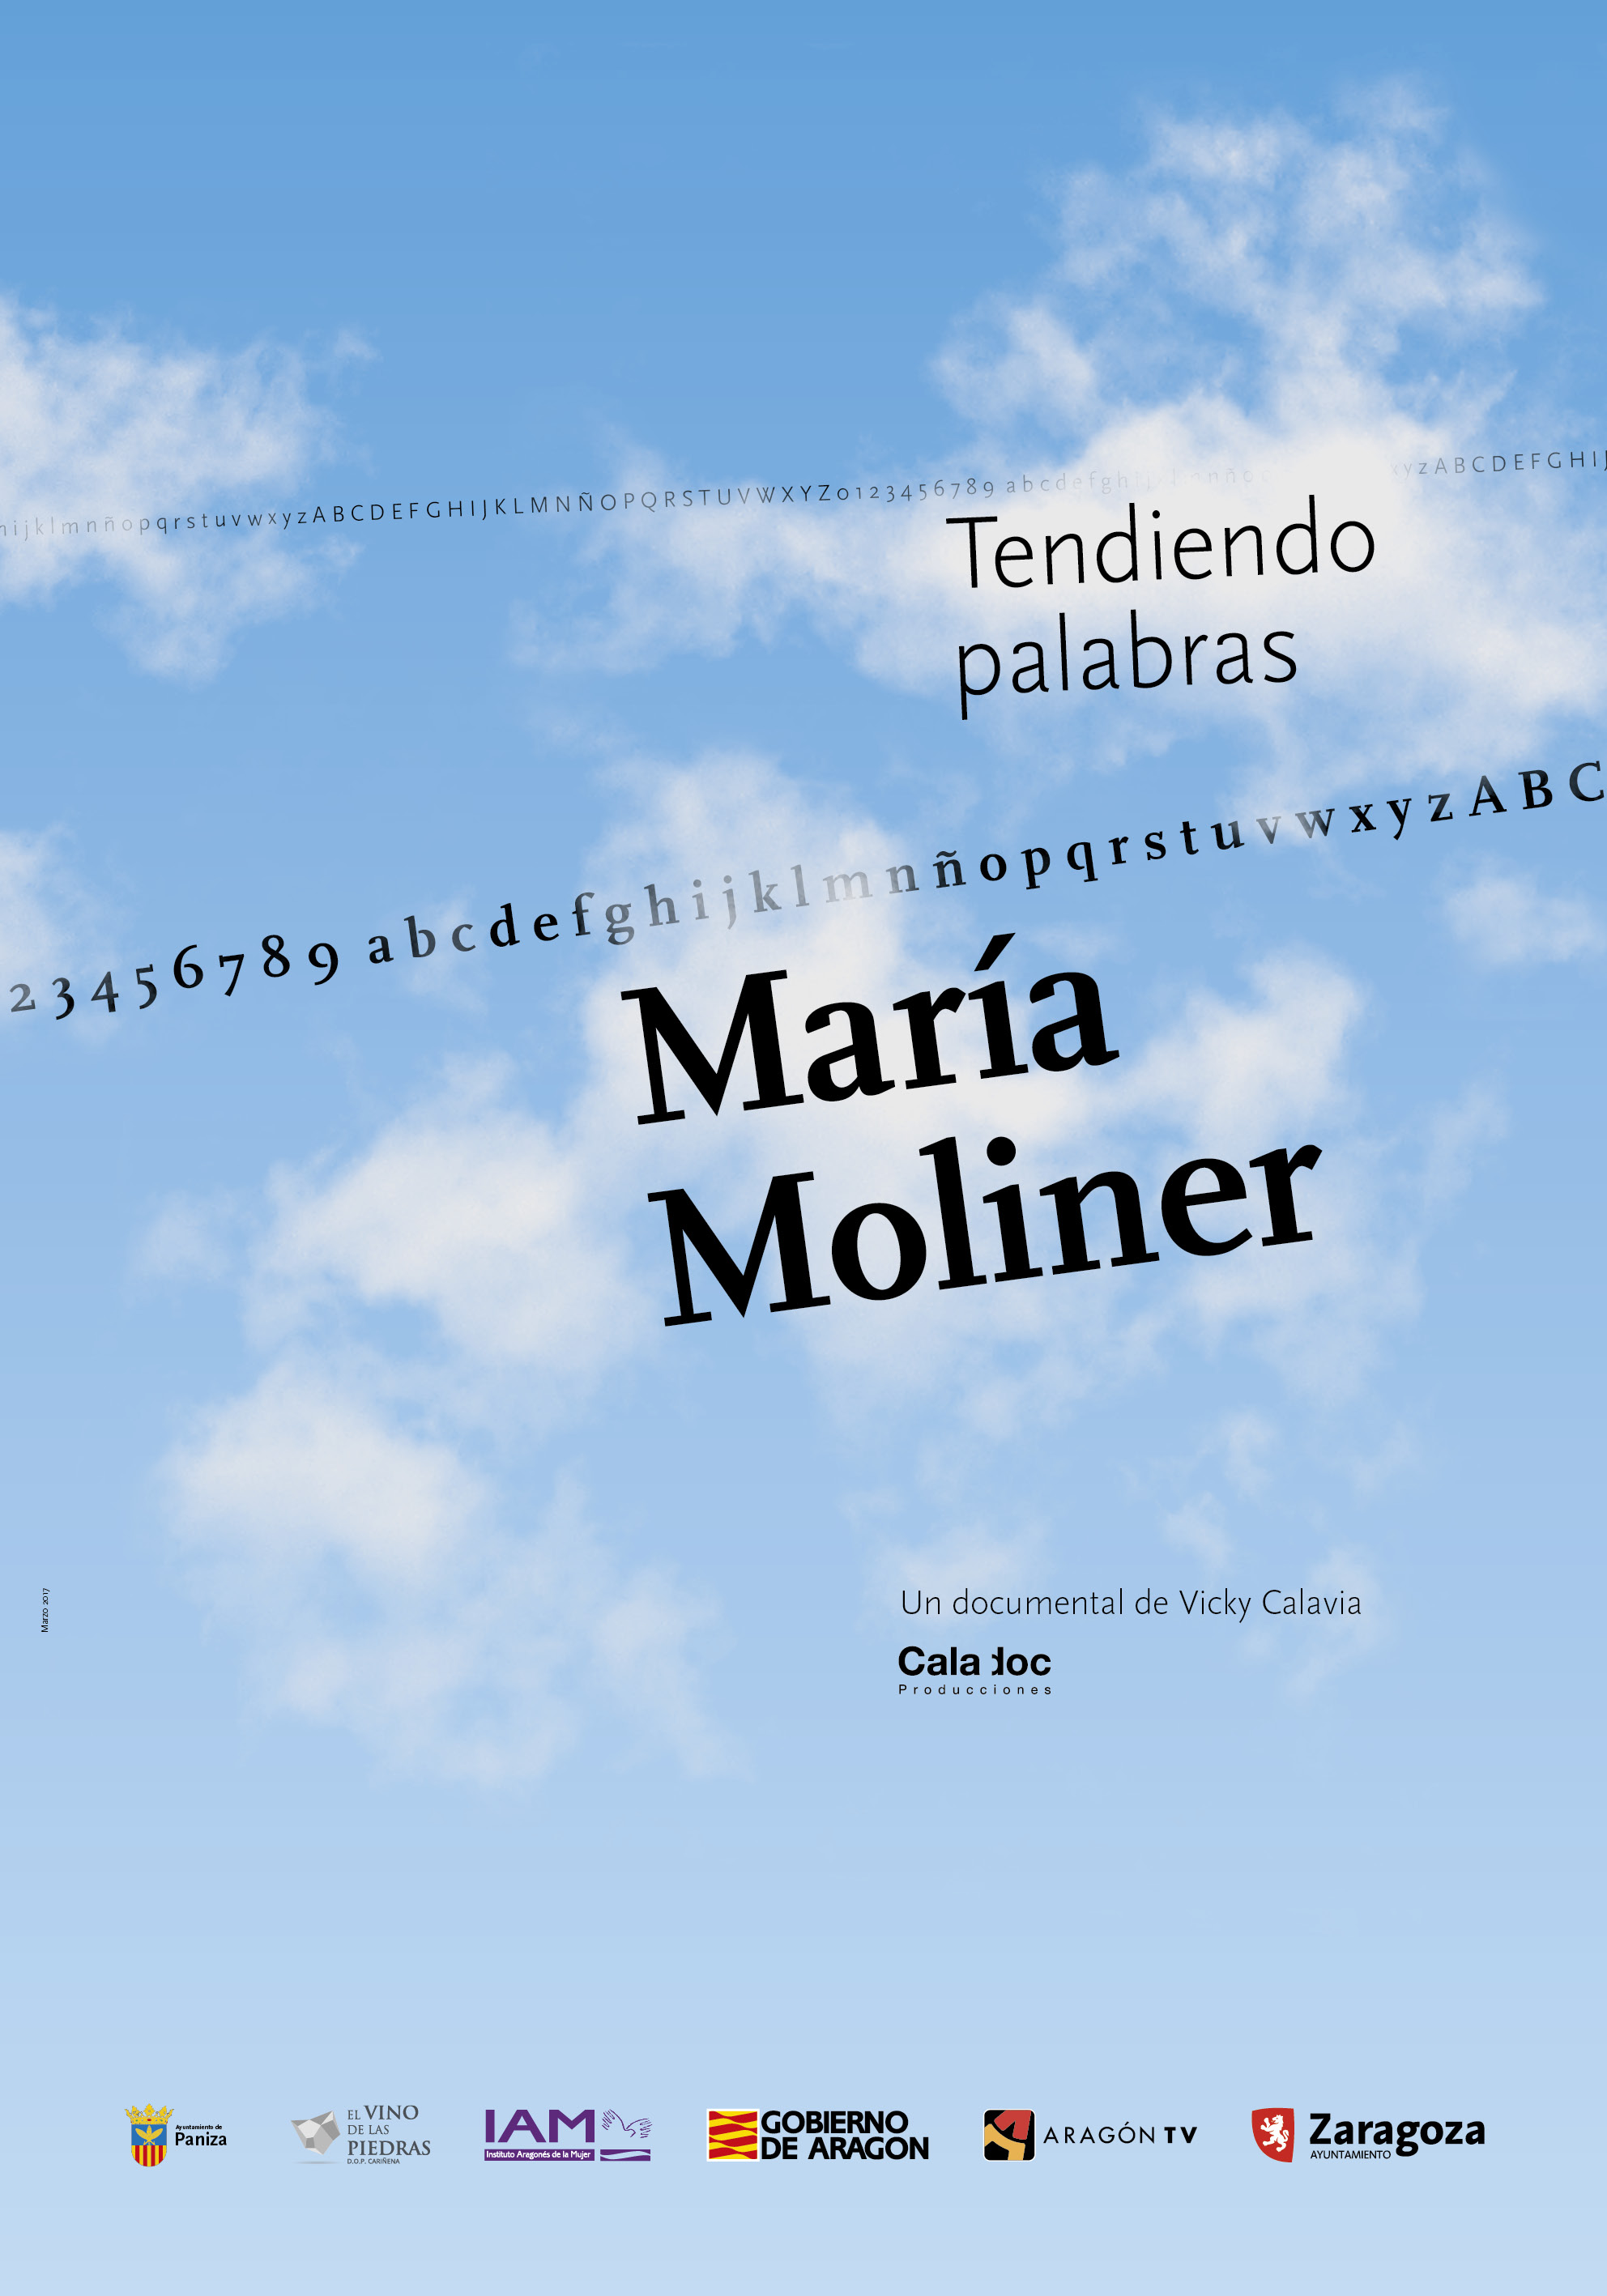 8 Μαρτίου, Κινηματογράφος για την Γυναίκα.  Μαρία Μολινέρ, απλώνοντας λέξεις